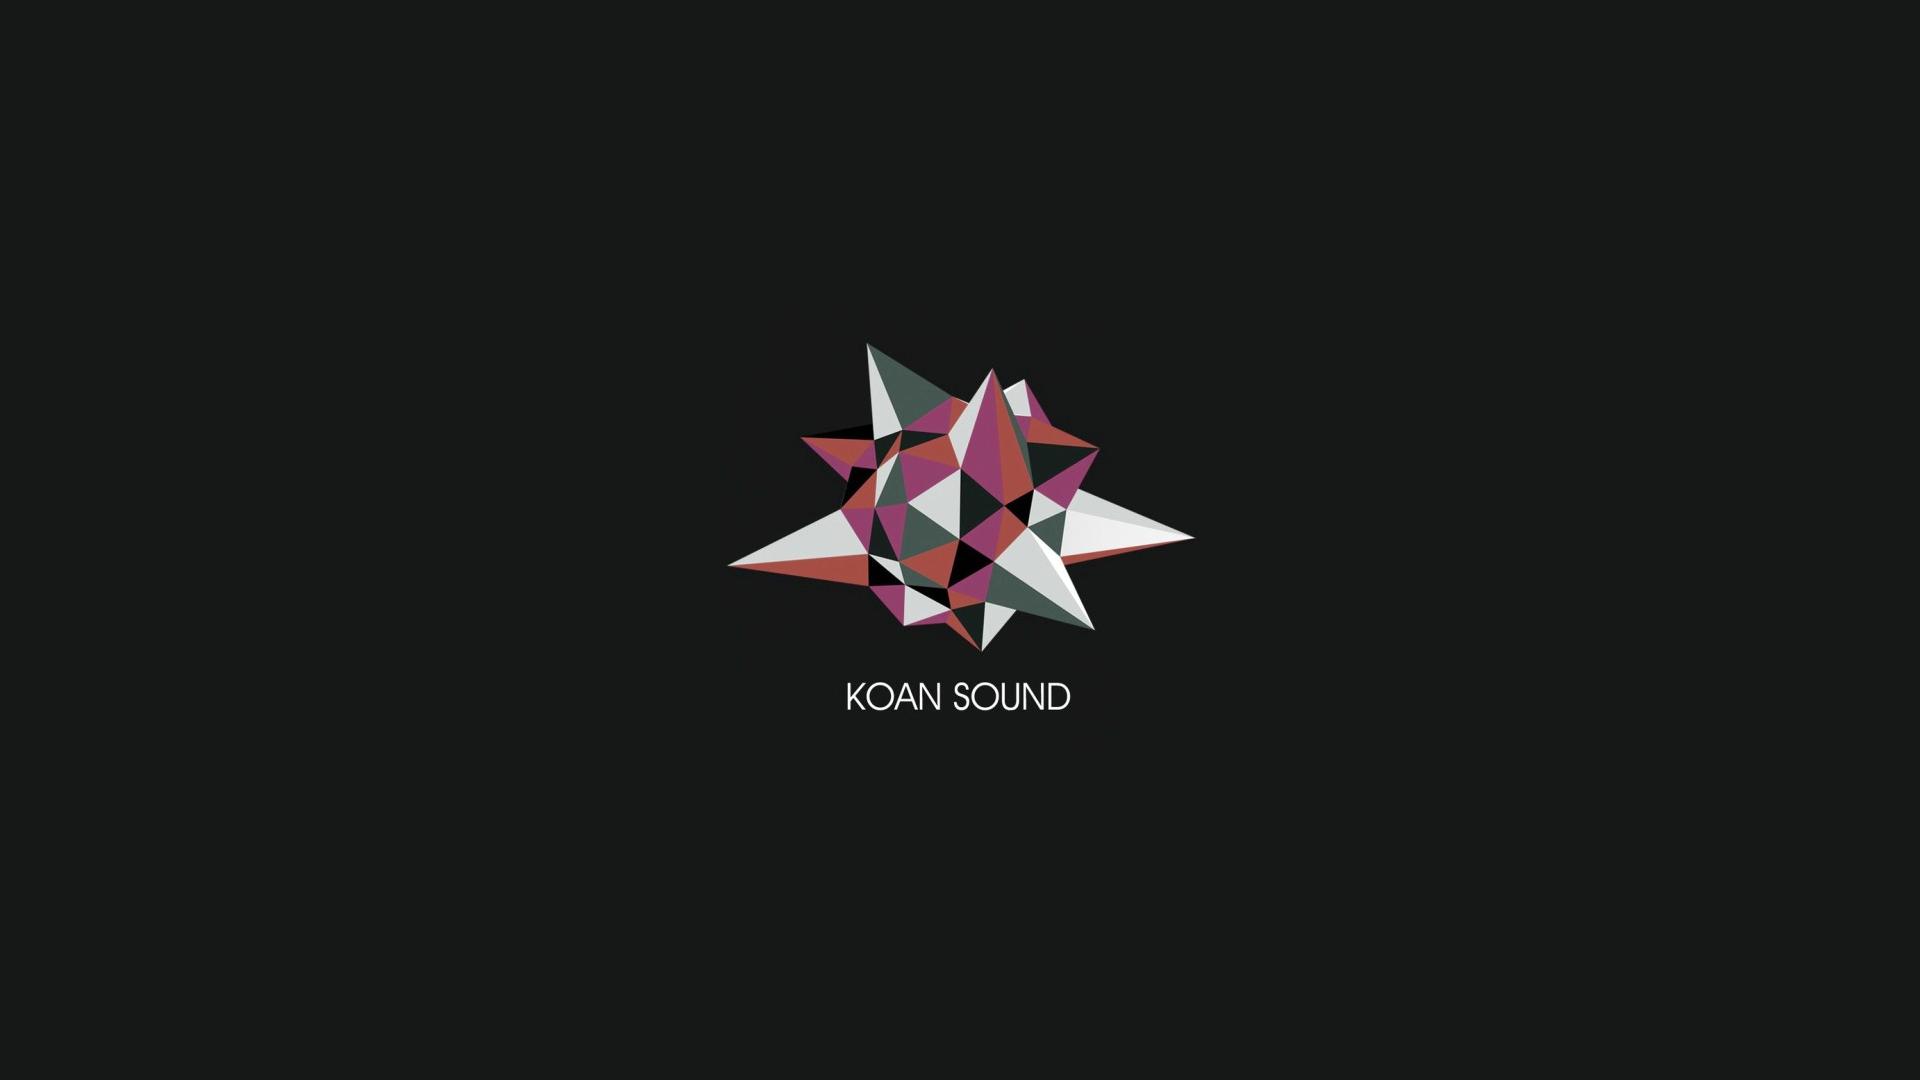 KOAN Sound HD Wallpaperx1080